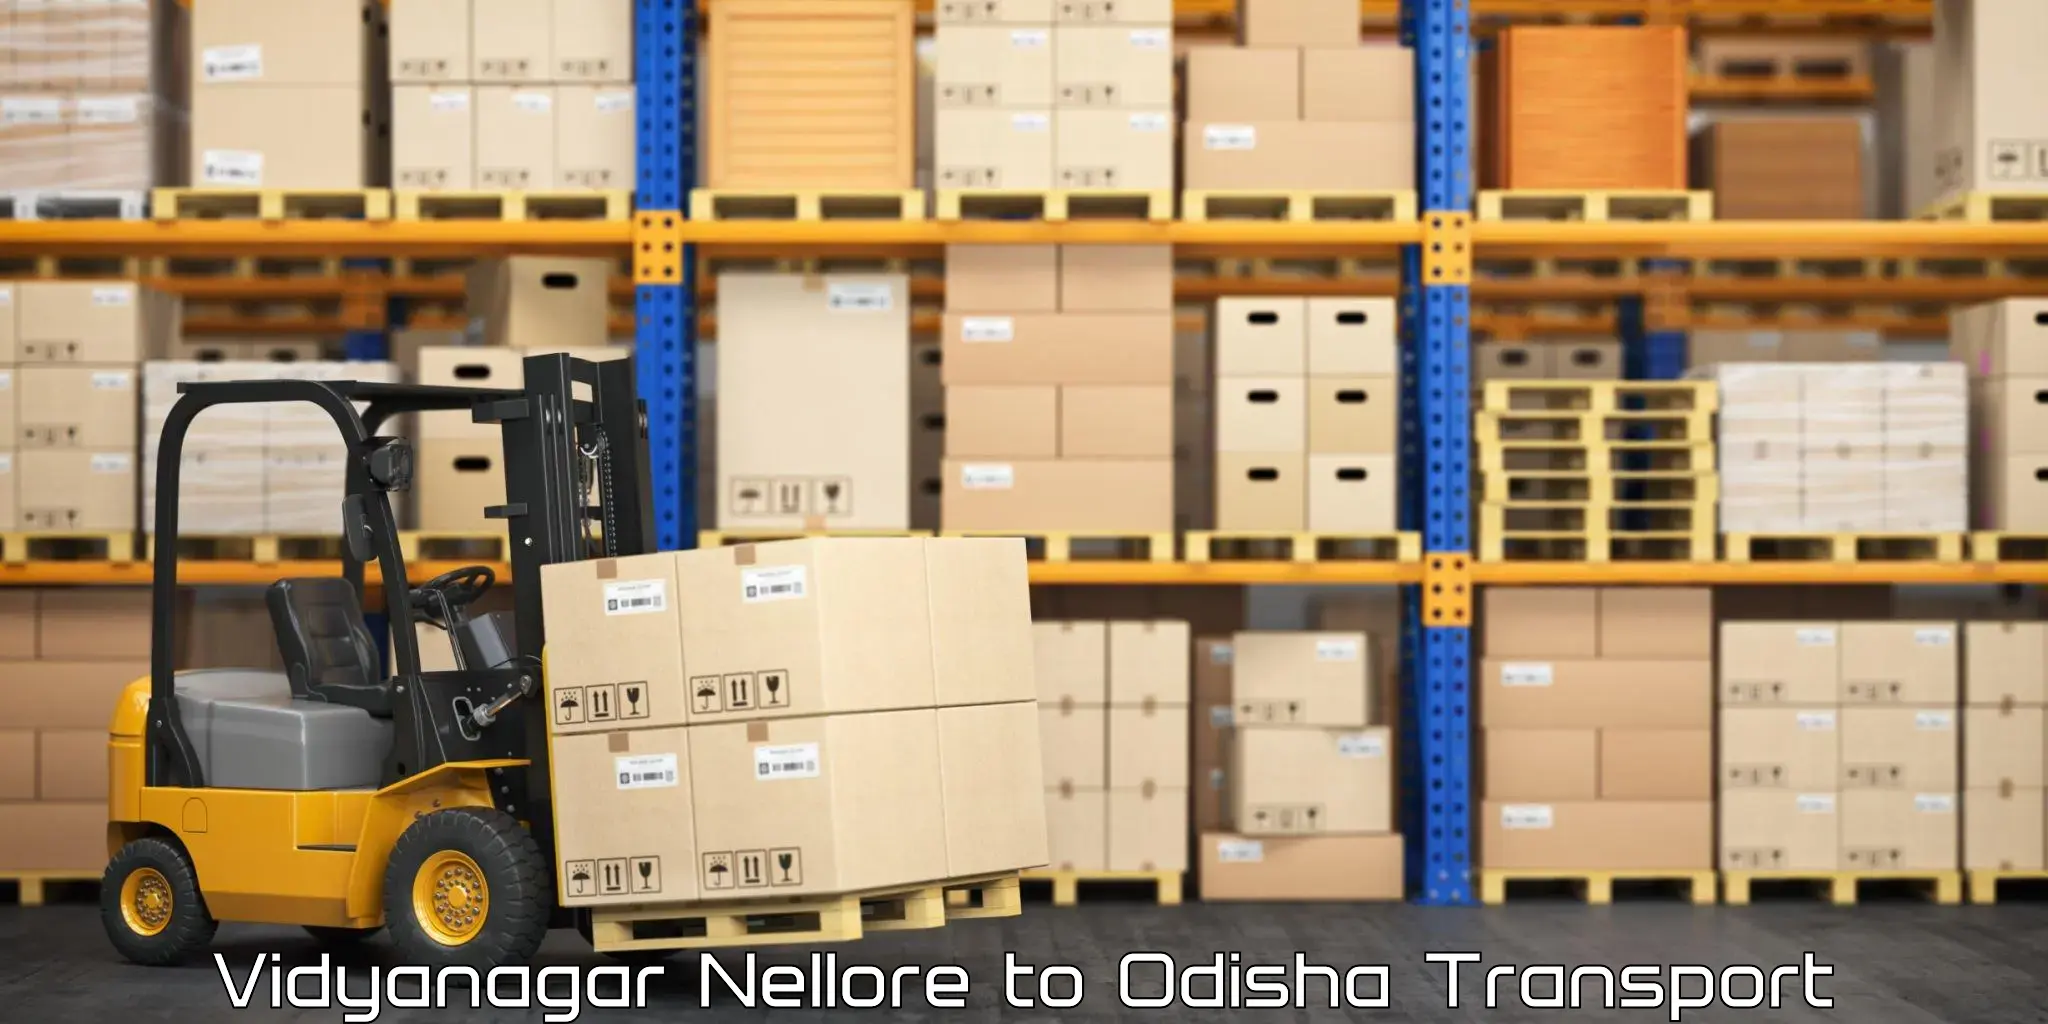 Shipping services Vidyanagar Nellore to Nuapada